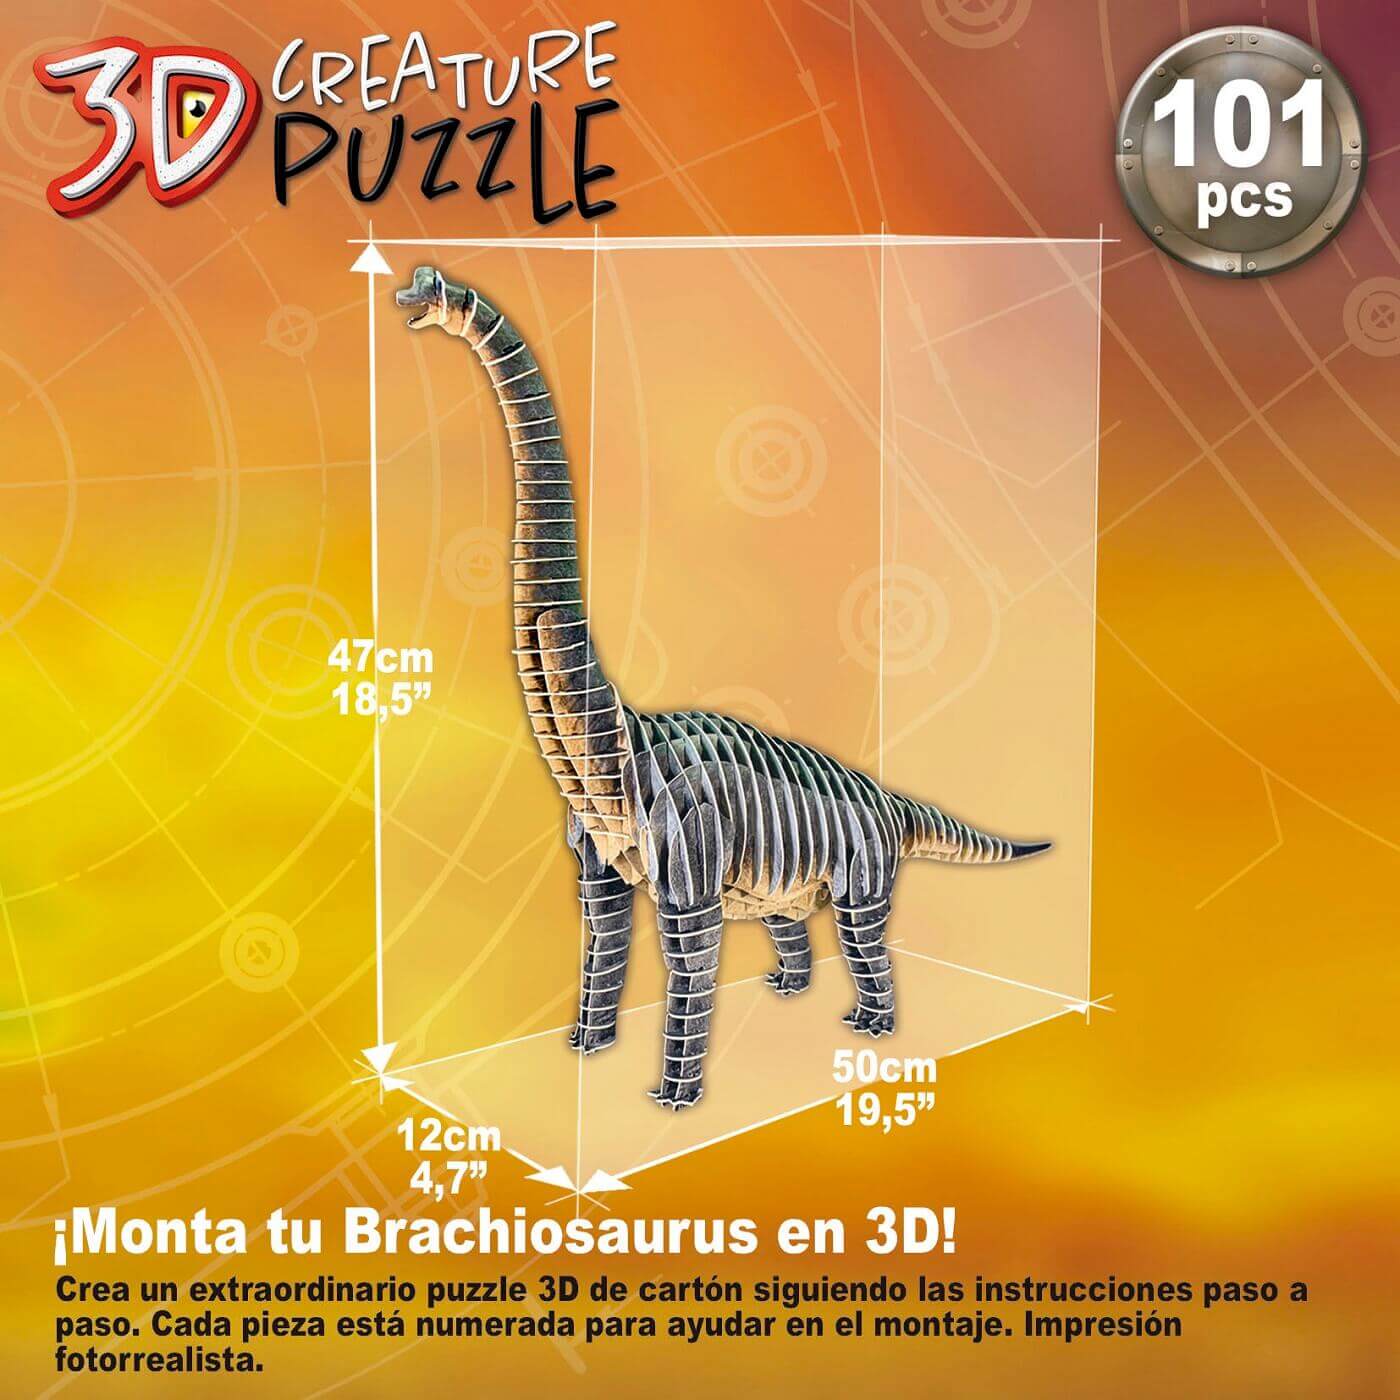 Brachiosaurus 3D Creature Puzzle ( Educa 19383 ) imagen c